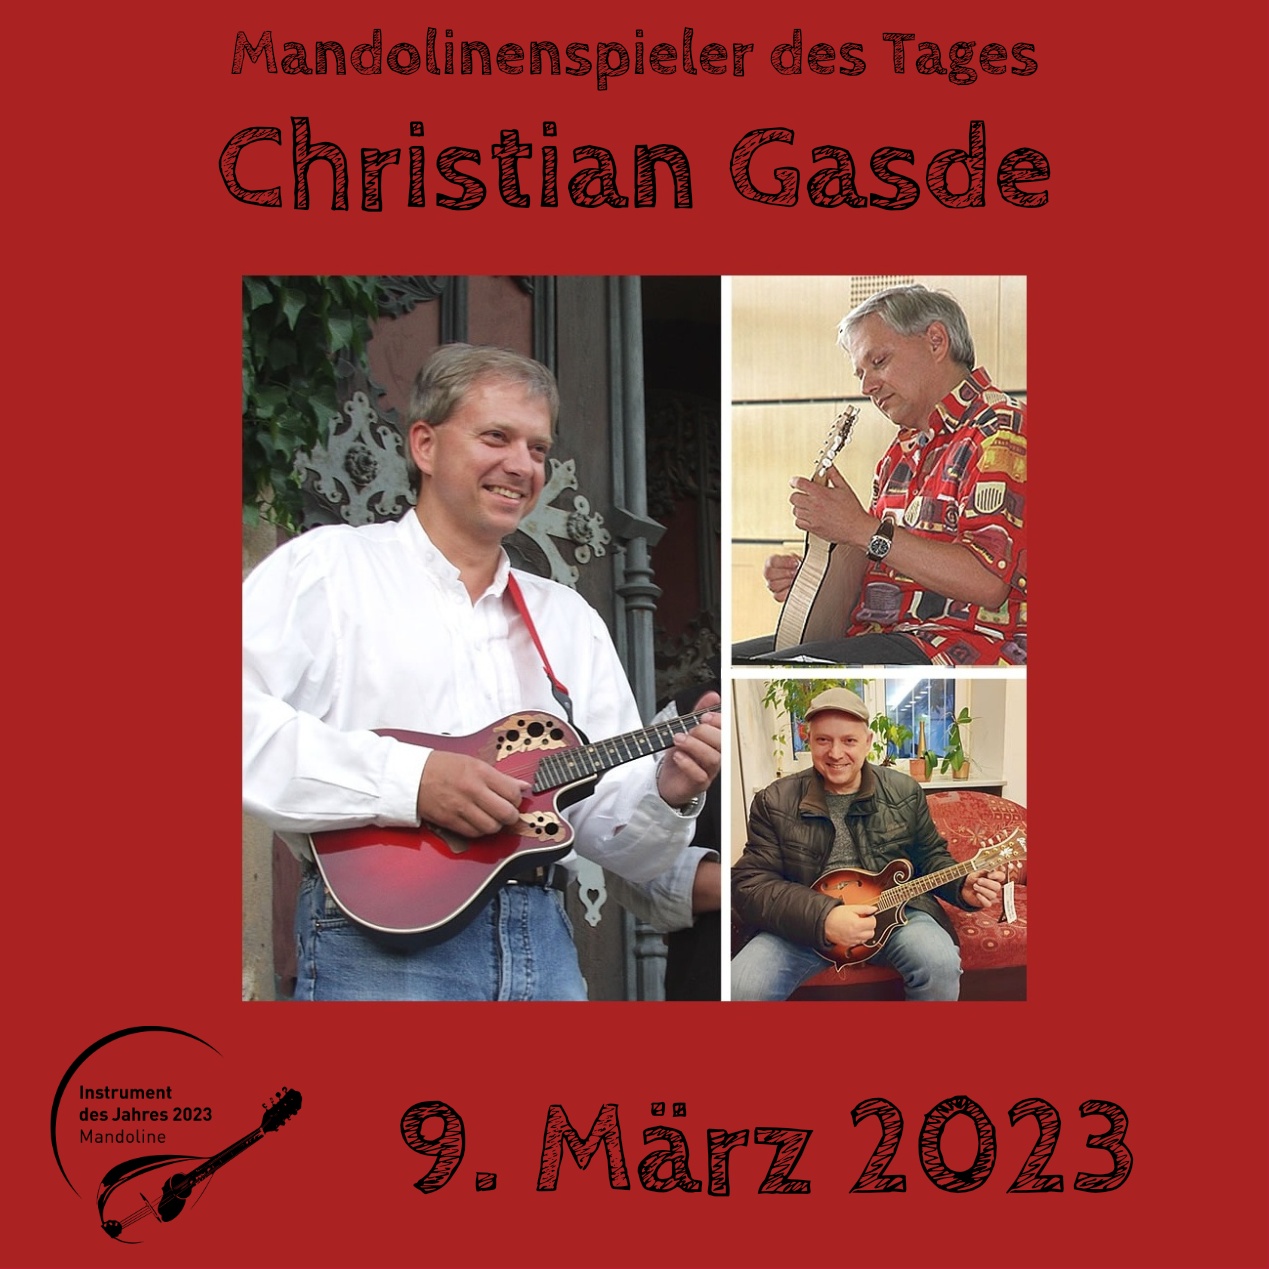 Christian Gasde Mandoline Instrument des Jahres 2023 Mandolinenspieler des Tages